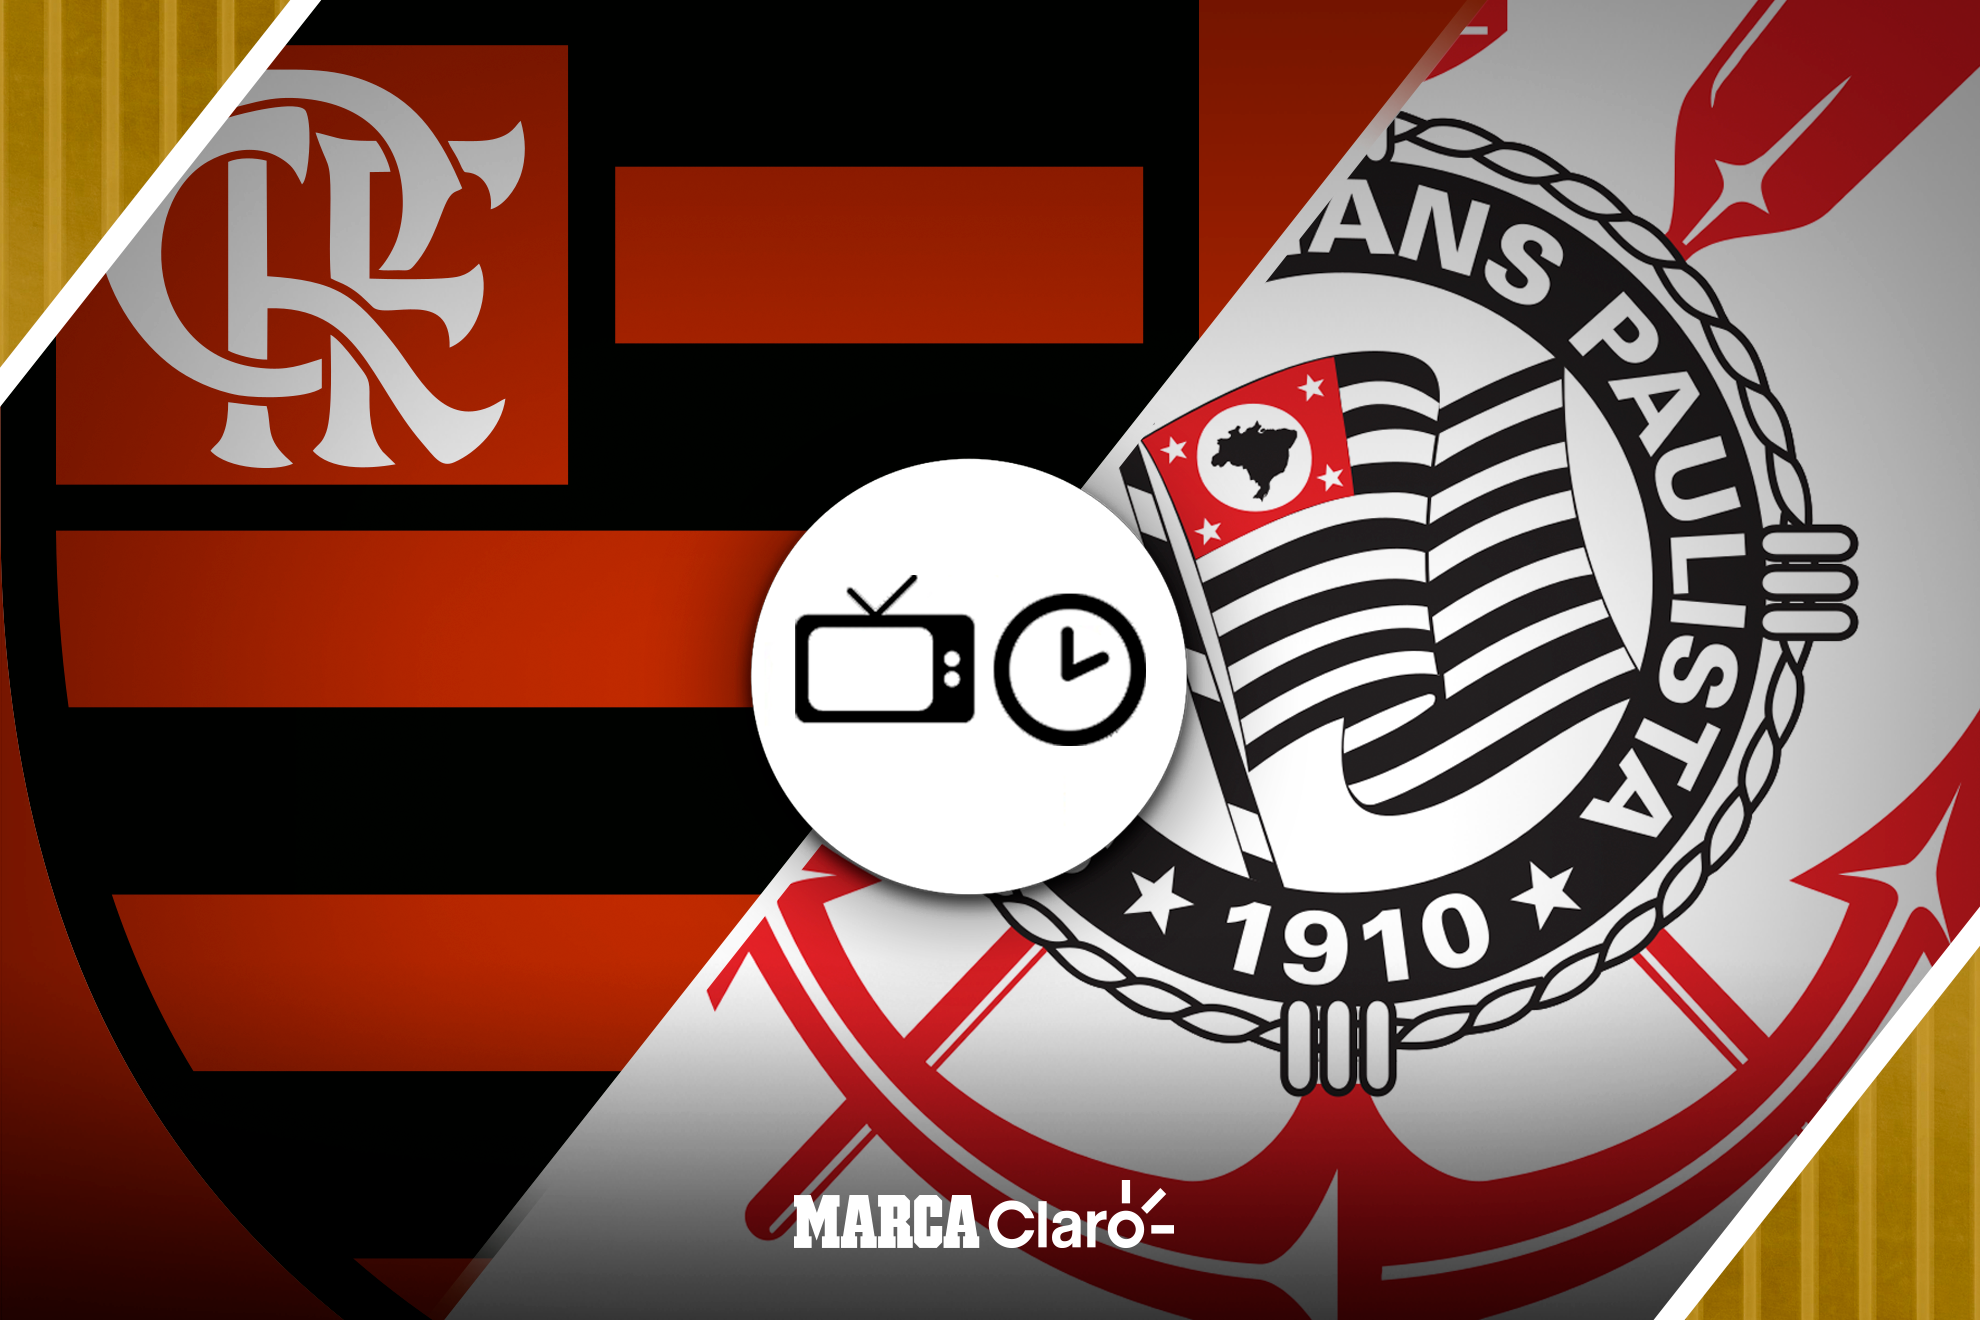 ¿Dónde se juega el partido de Flamengo contra Corinthians? | MARCA Claro